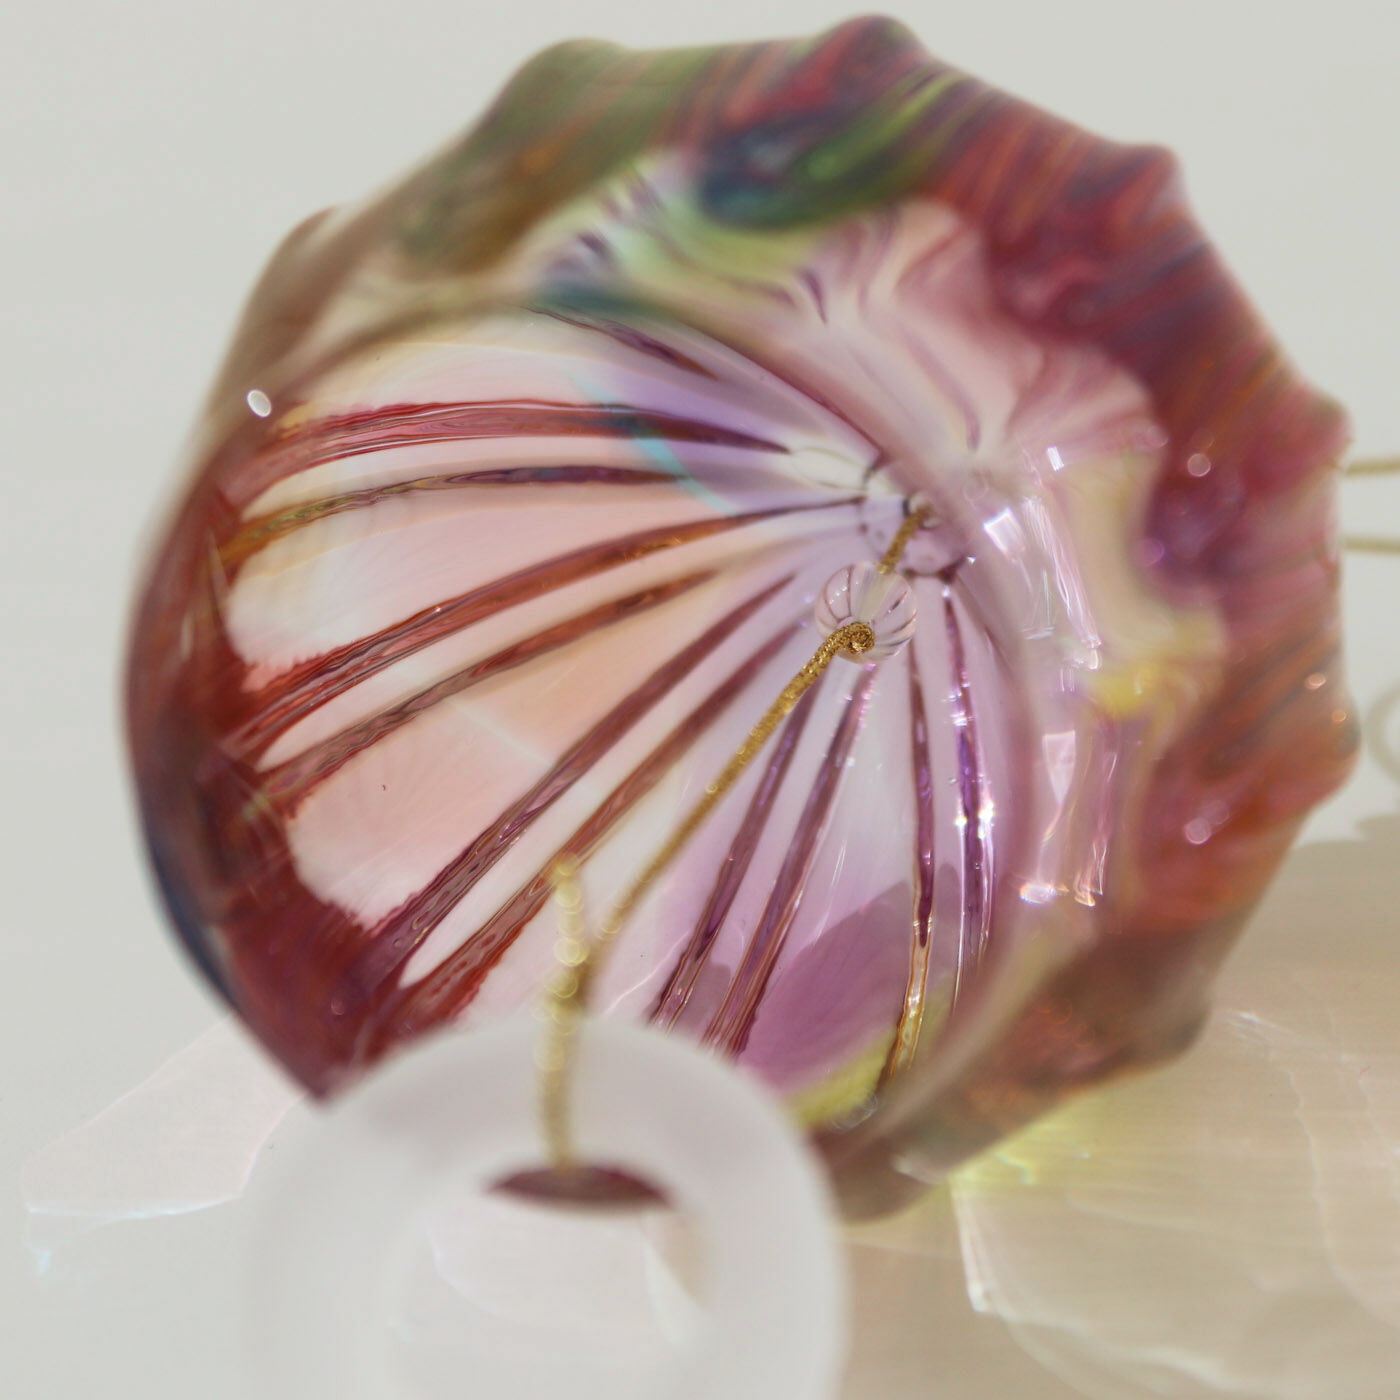 ＆Stories|小田原のガラス職人が作った　オーロラが溶け込んだ宙吹き風鈴|風鈴本体の内側にも水晶珠。風鈴の「舌(ぜつ)」もガラス製。